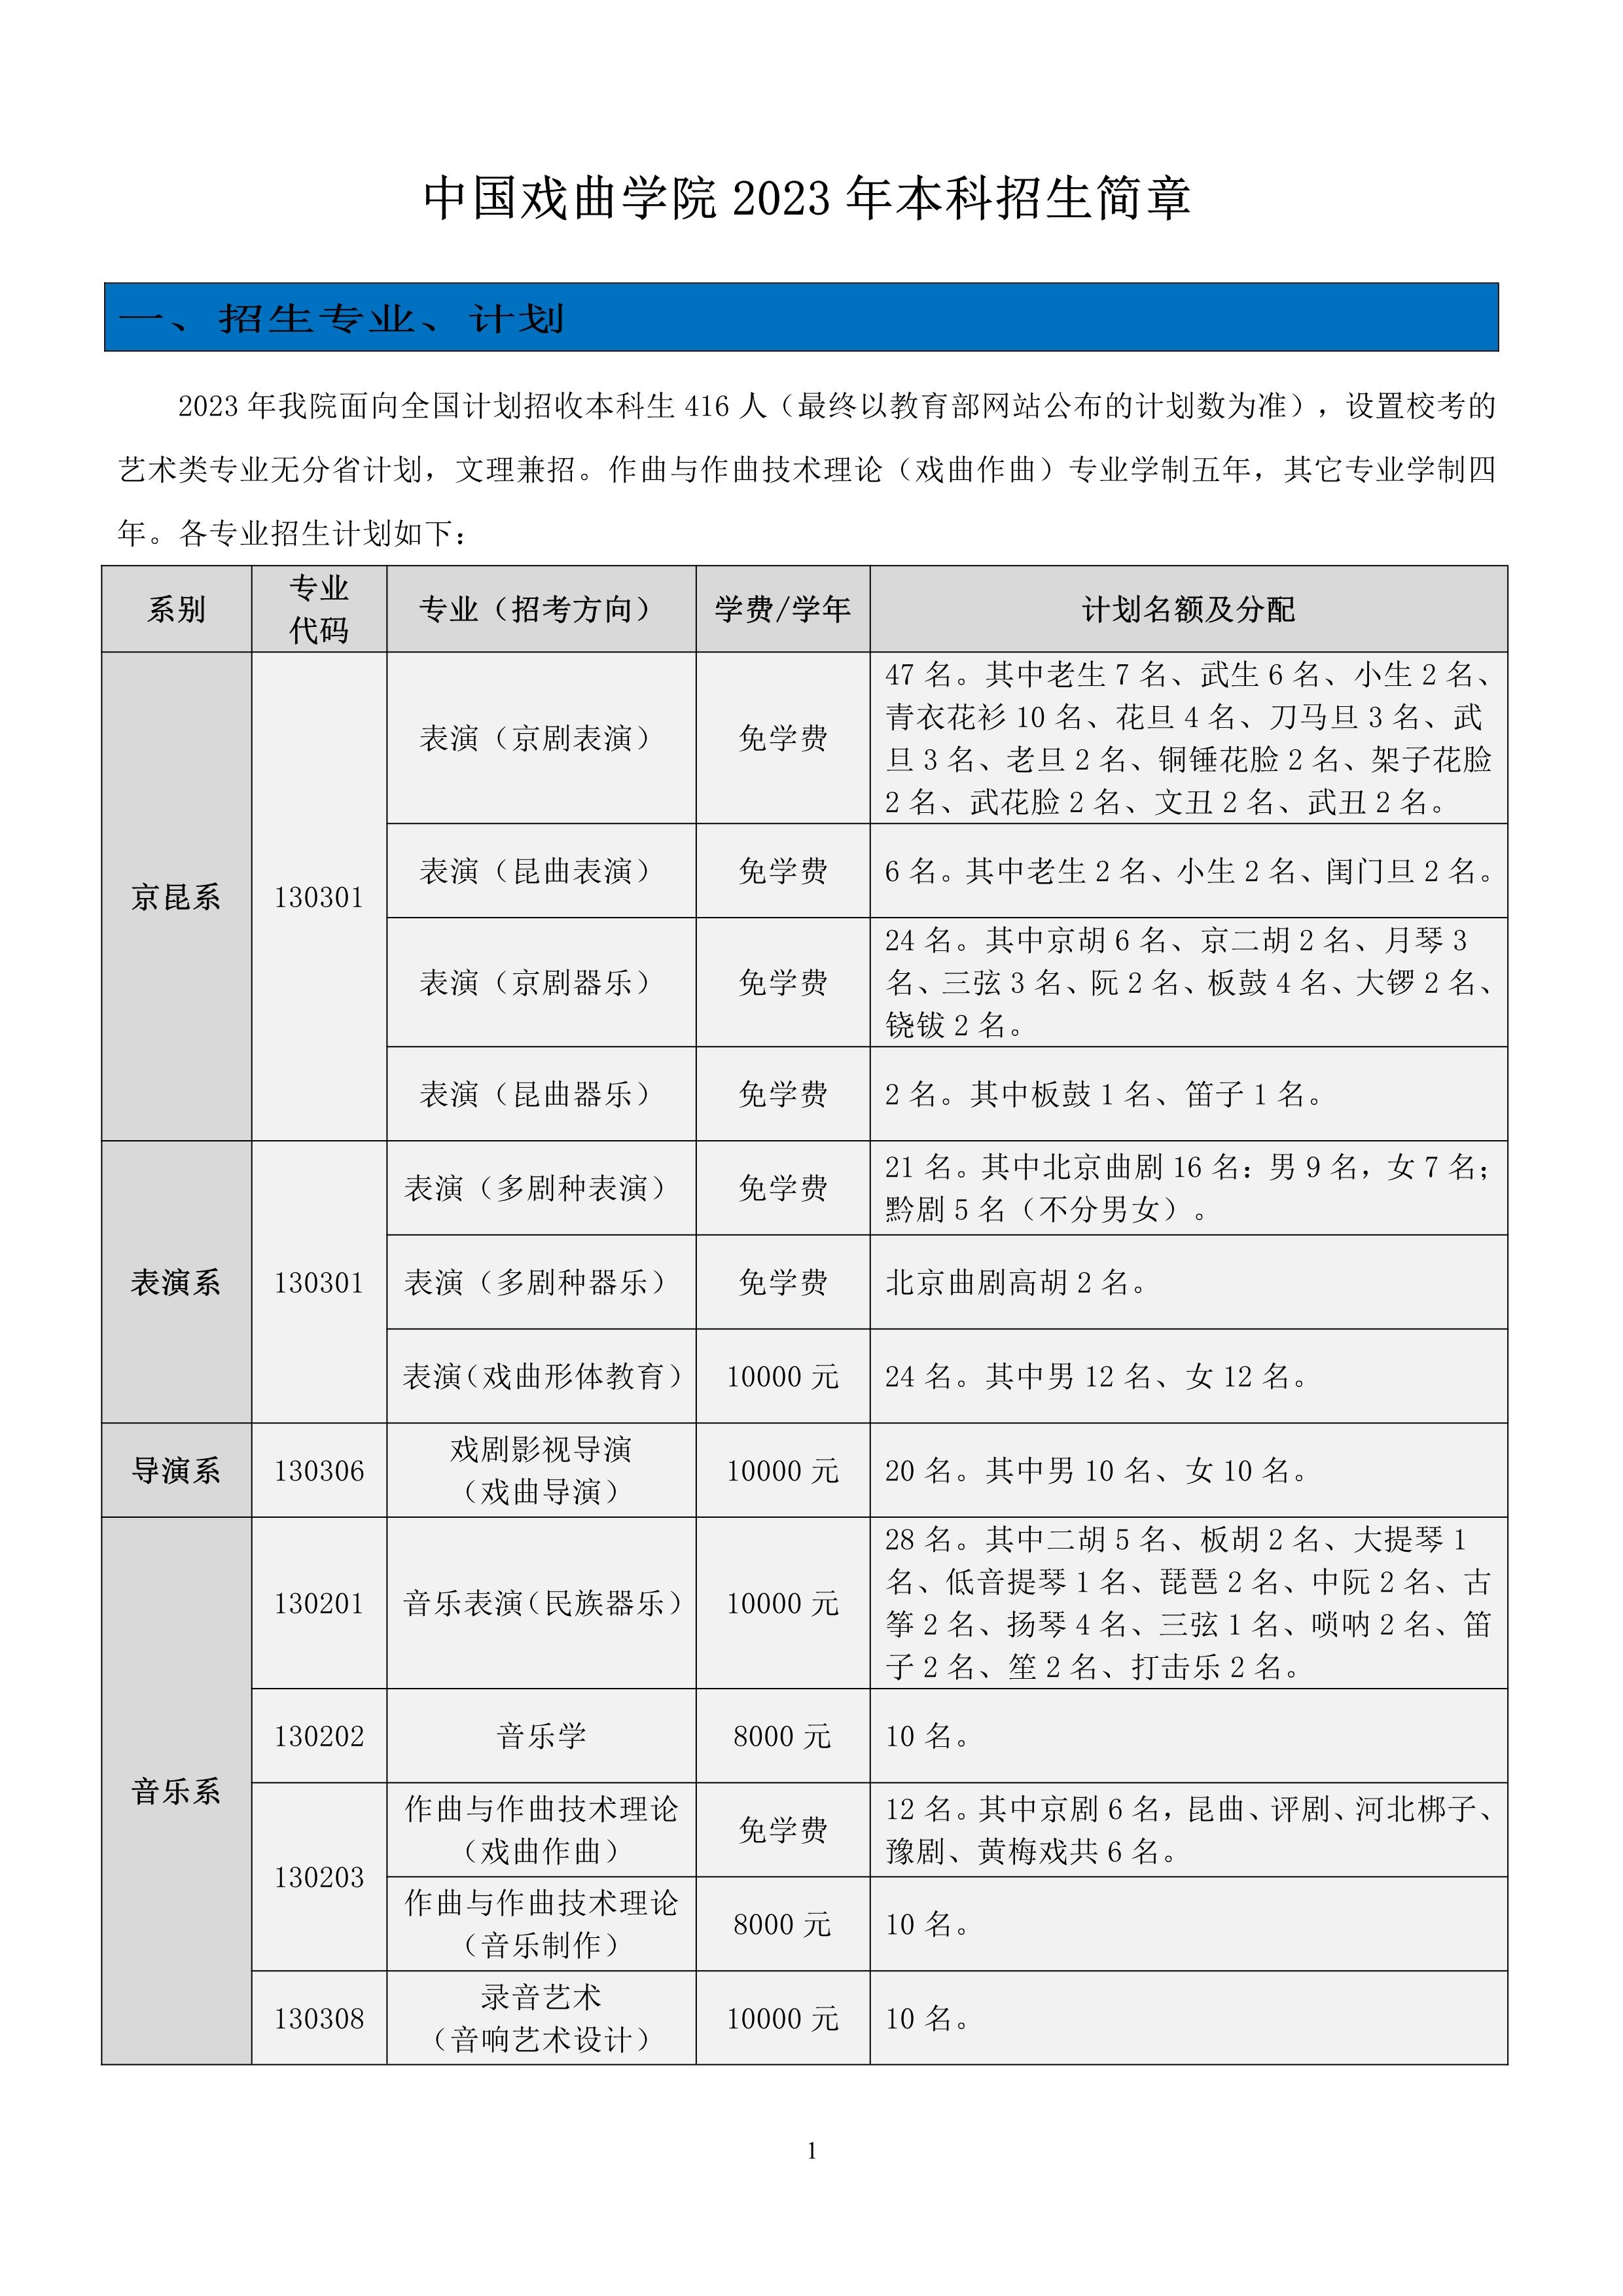 中国戏曲学院2023年本科招生简章_1.jpg